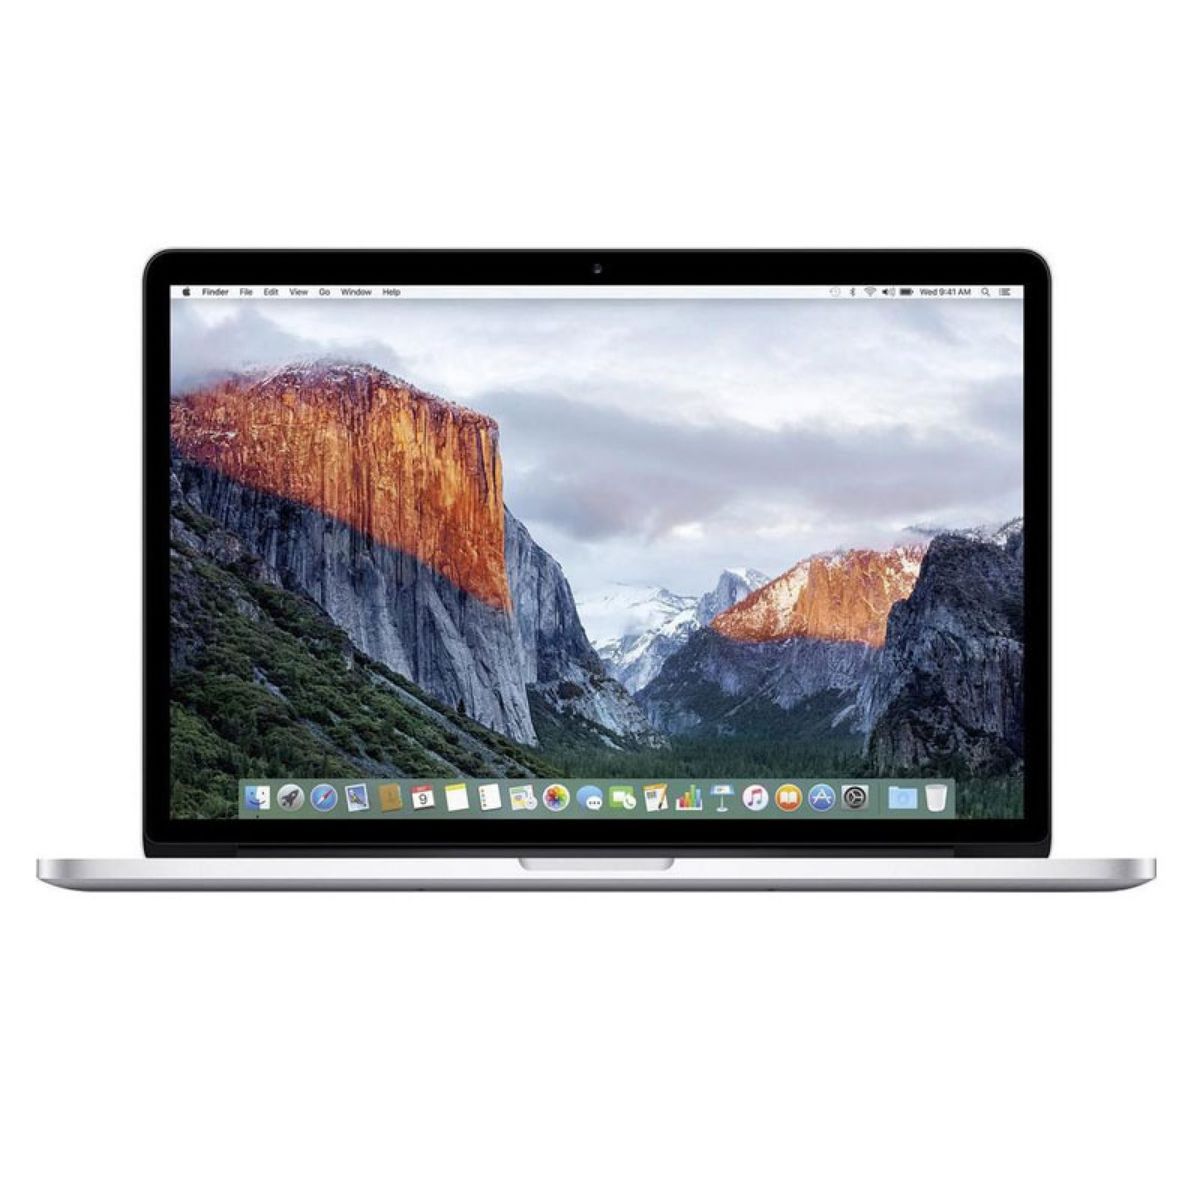 Apple MacBook Pro 15,4" Retina 2012 - Early 2013 (A1398) Batterie / Akku Austausch